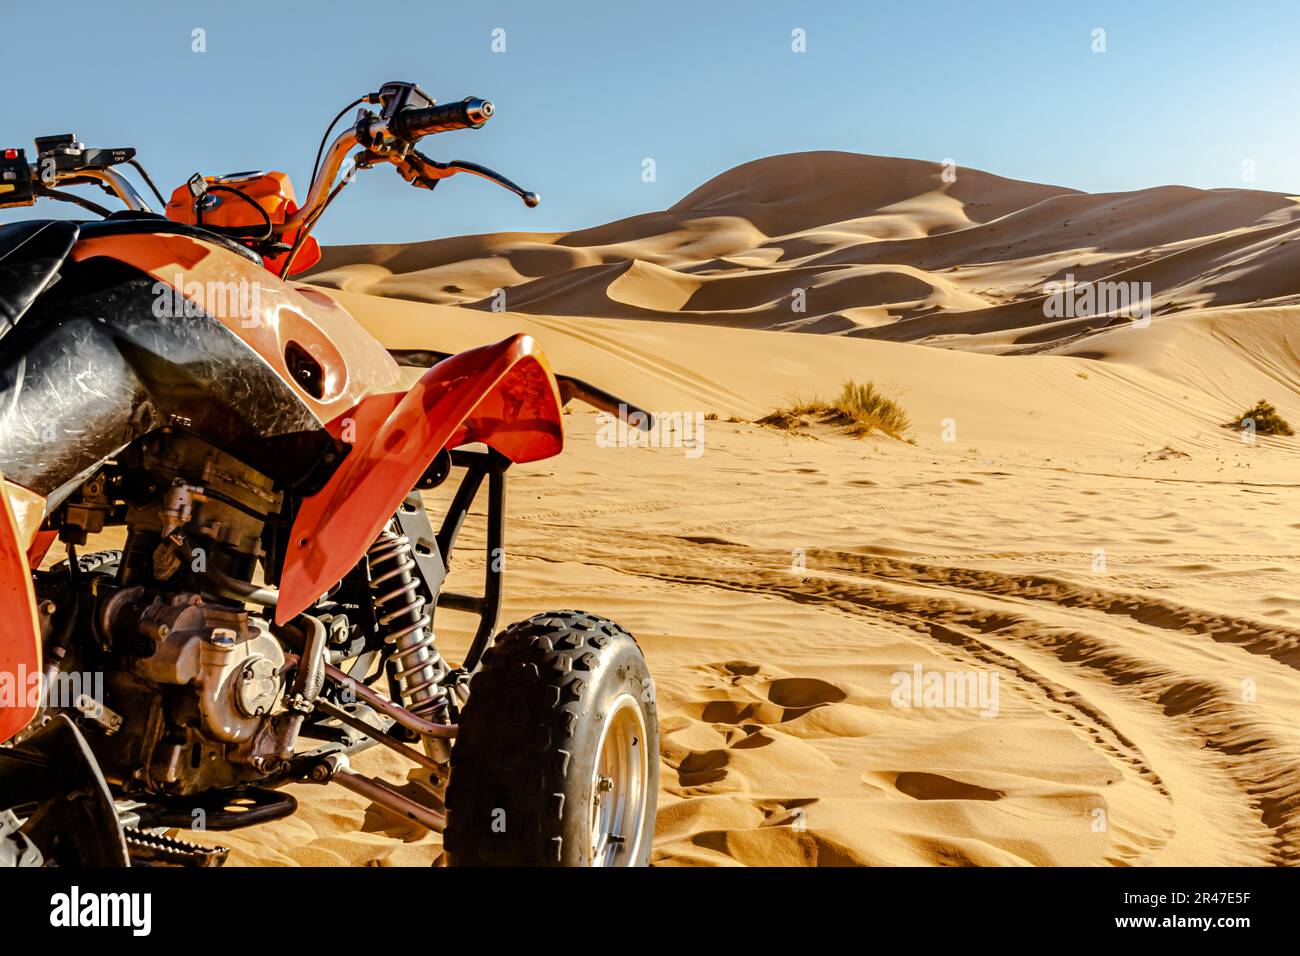 Quadbike veicolo di colore arancione e nero parcheggiato nel deserto del Sahara, focalizzazione selettiva in primo piano, dune di sabbia di colore giallo dorato e cielo blu. Foto Stock